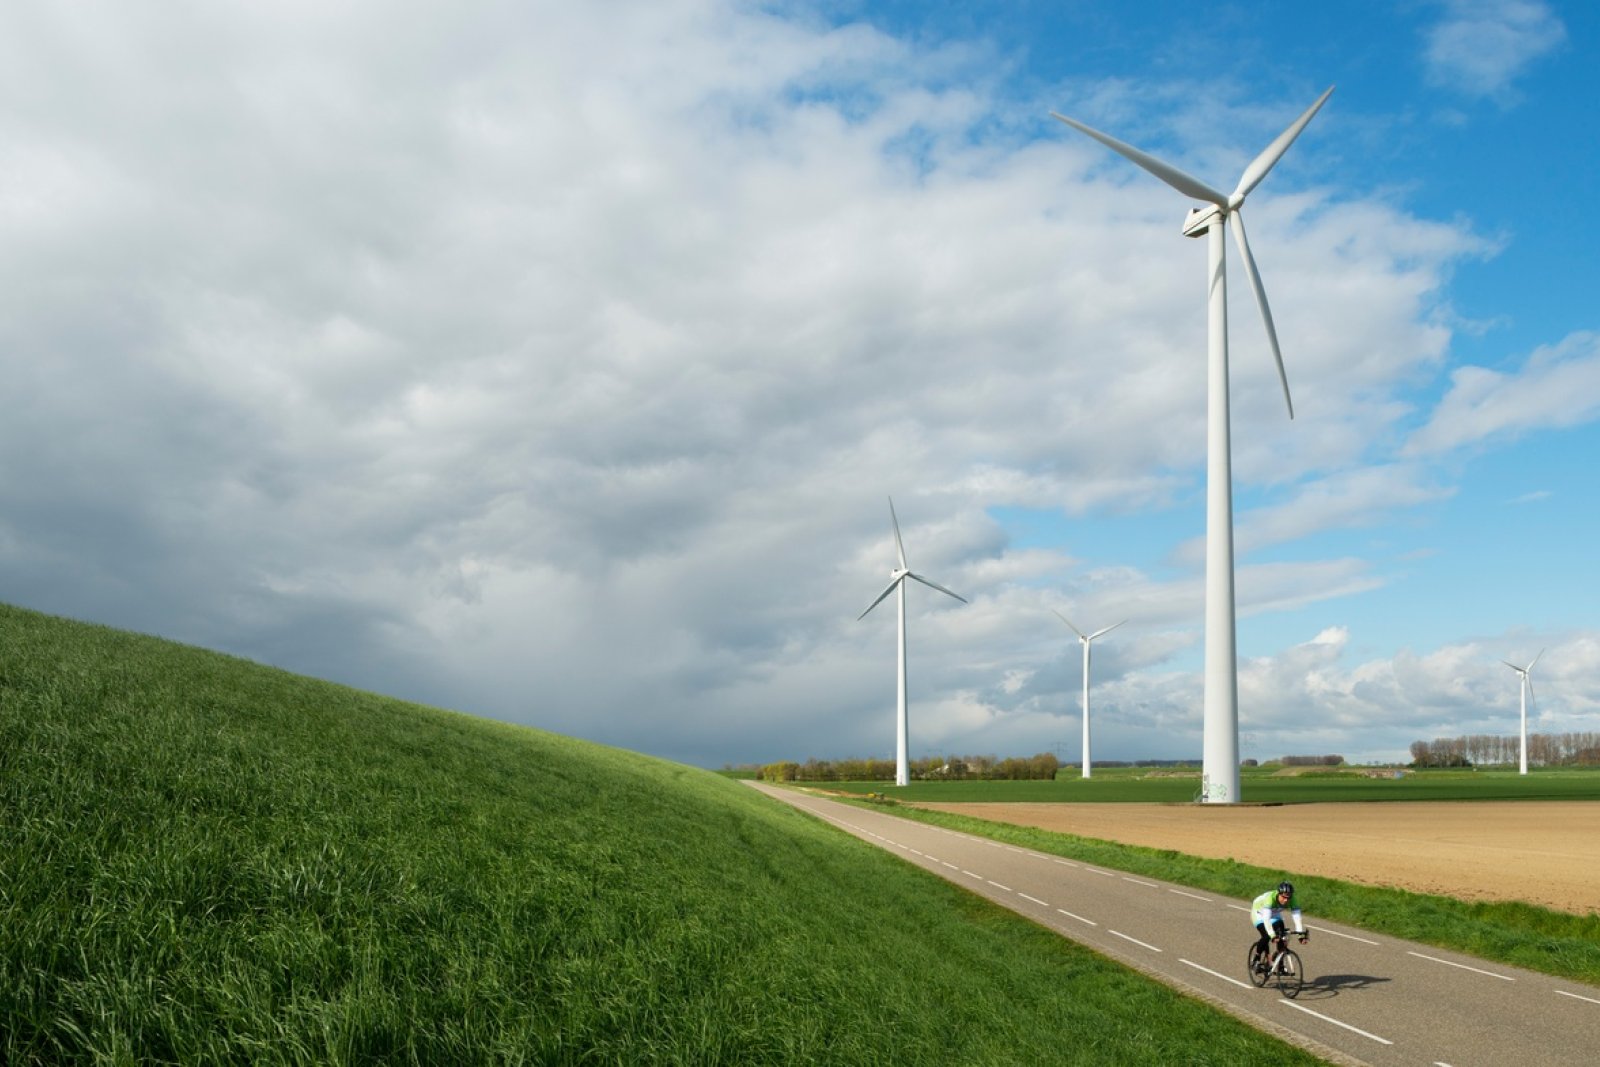 Cyclist next to wind turbines